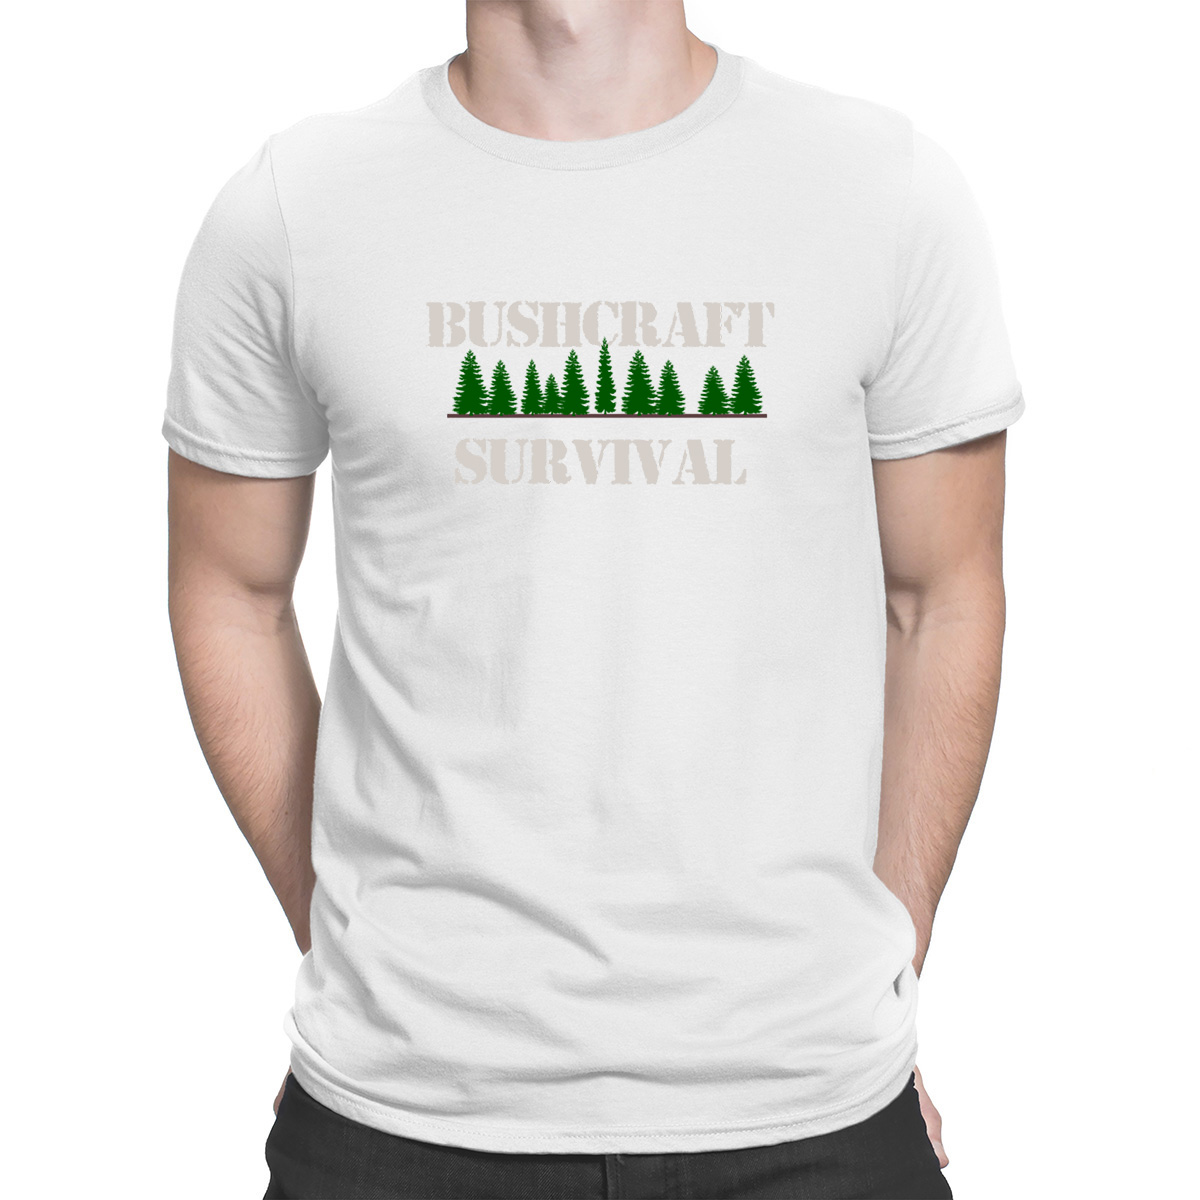 FABTEE maglietta da uomo Bushcraft Outdoor Survival Adventure taglie fino a 3XL 